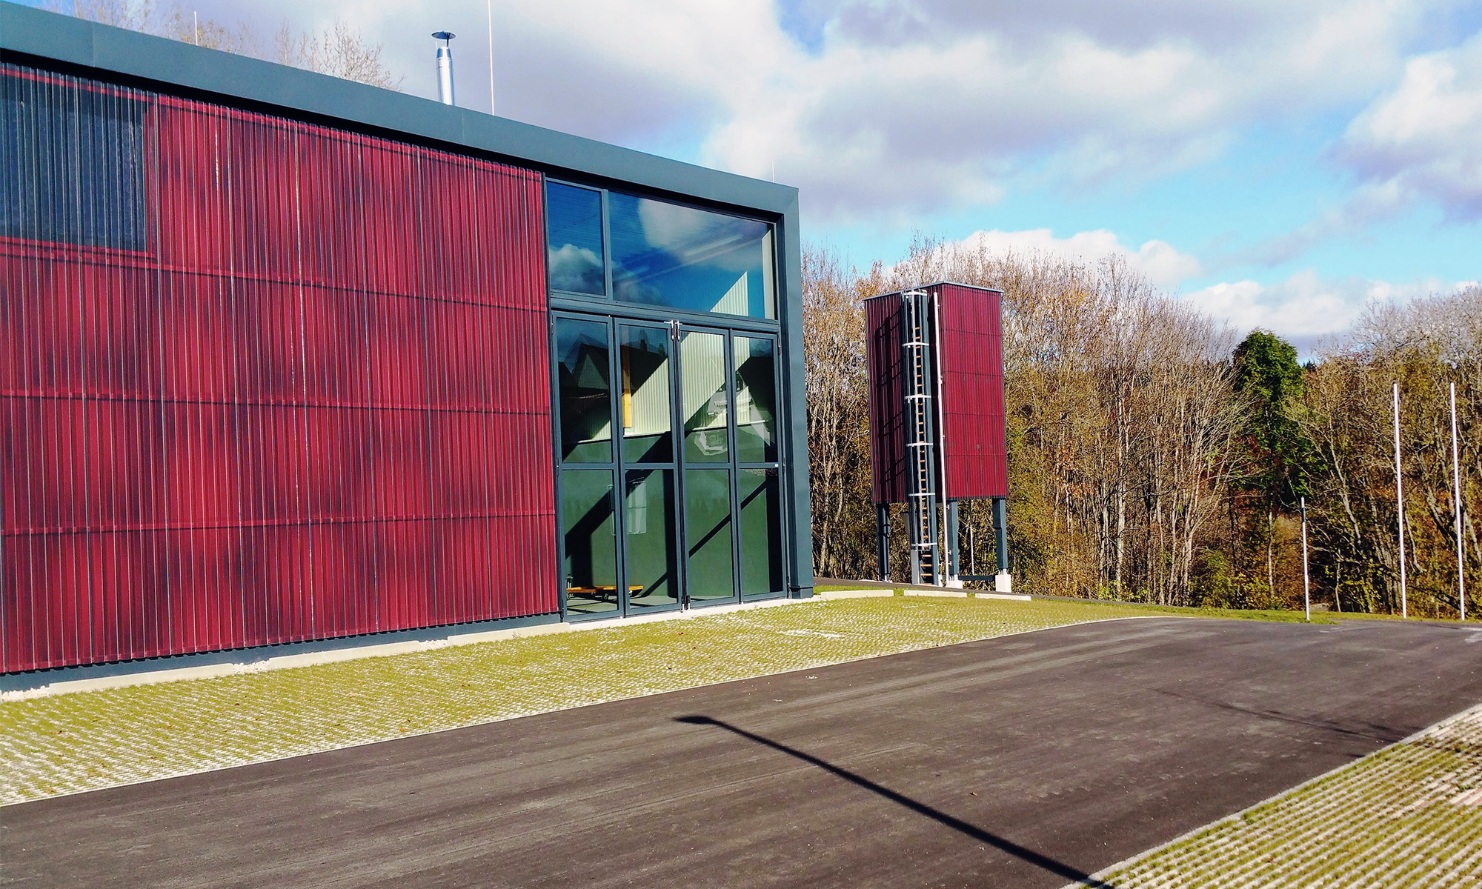 Silo moderne en bois rouge carré (E4) posé à côté d’un bâtiment neuf avec une façade en bois rouge et de grands portails vitrés verts.